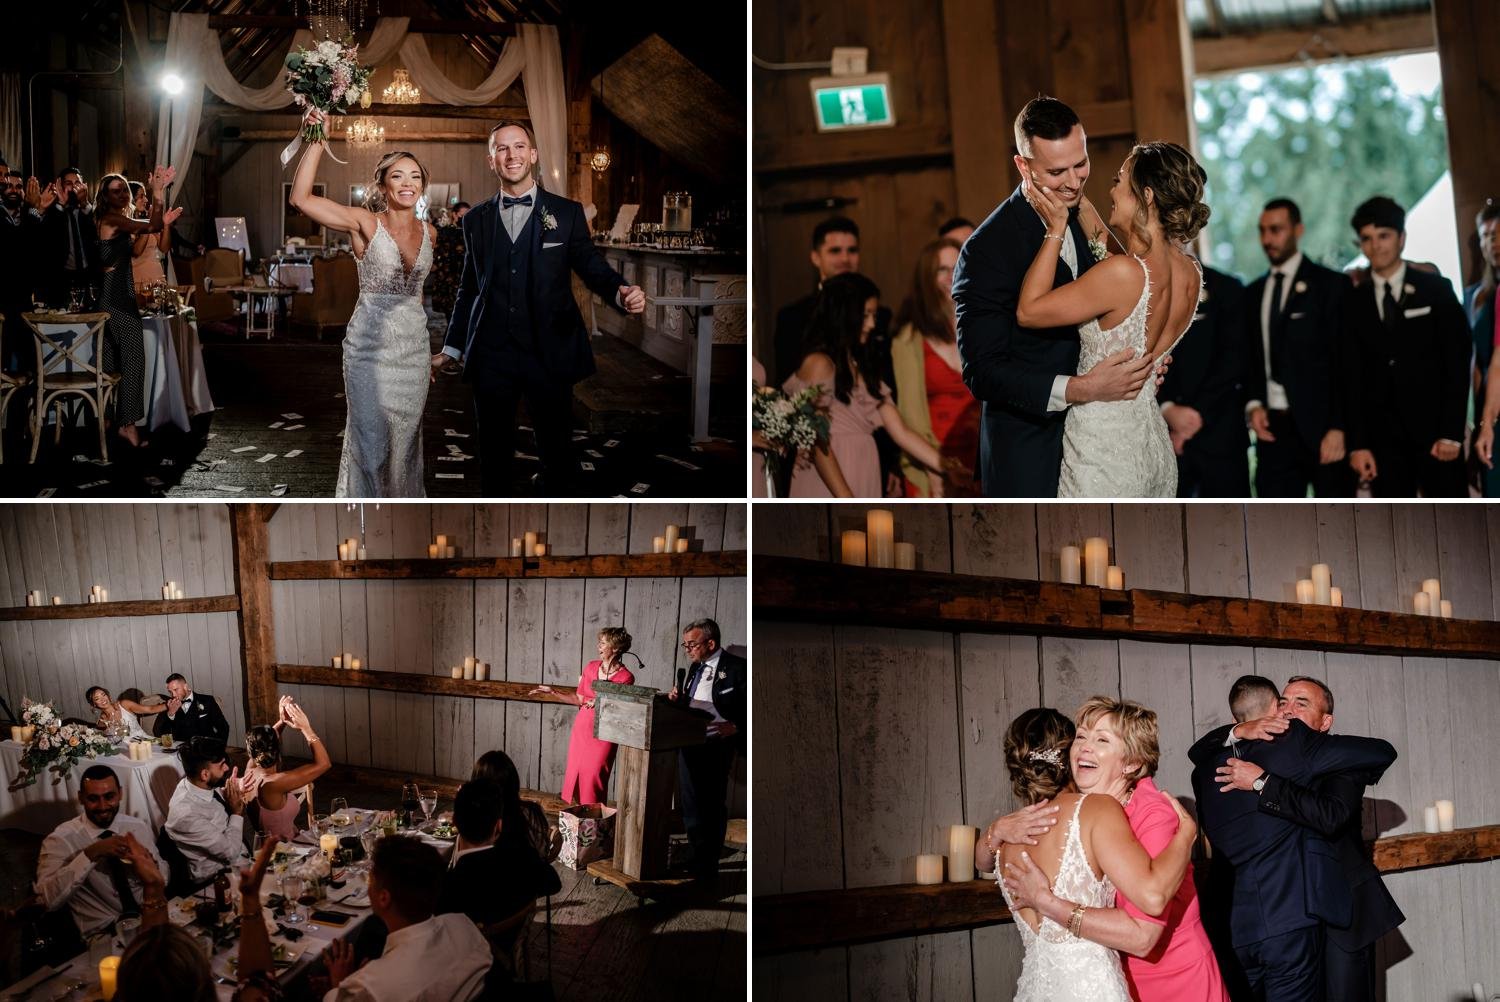 photos of an evermore wedding reception